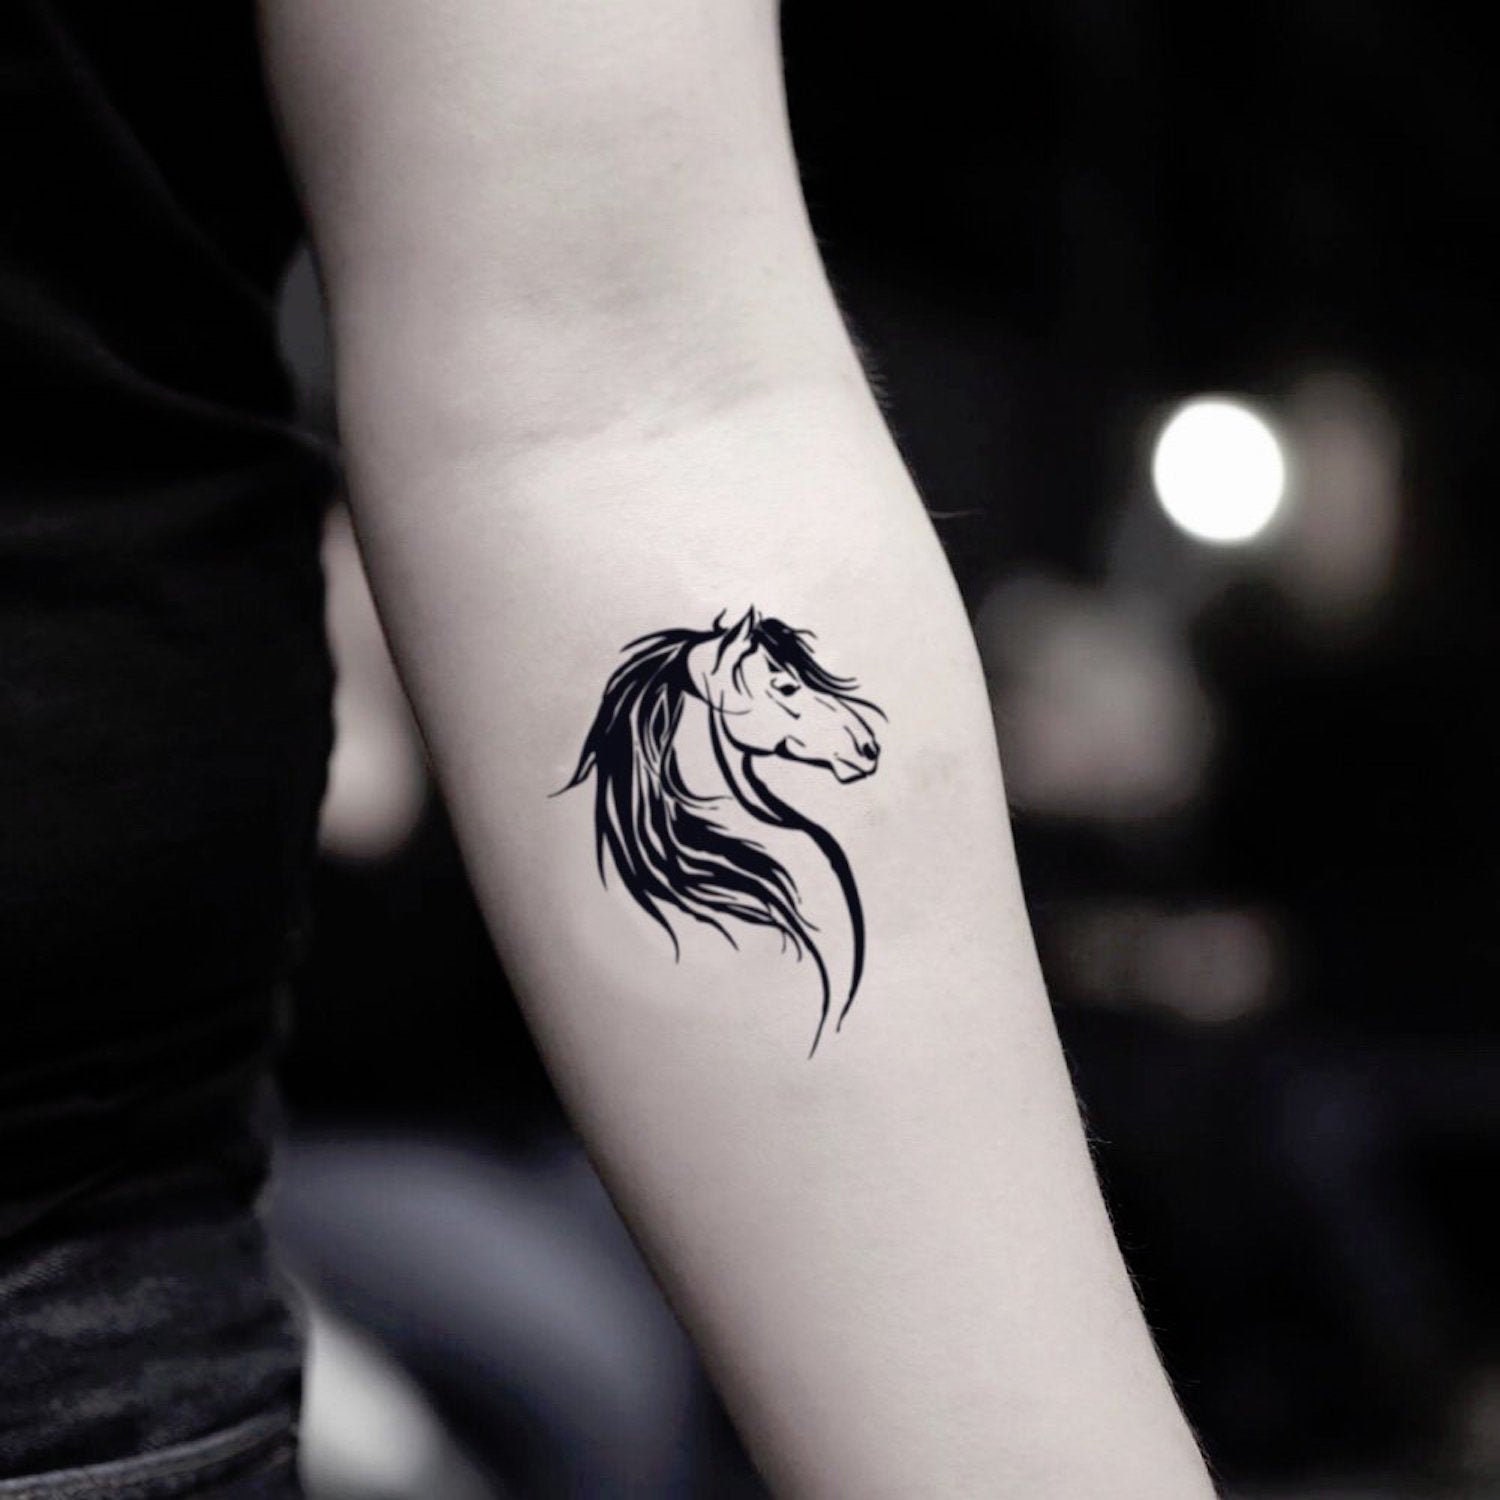 Forearm Black Horse Tattoo  Horse tattoo, Horse tattoo design, Small horse  tattoo